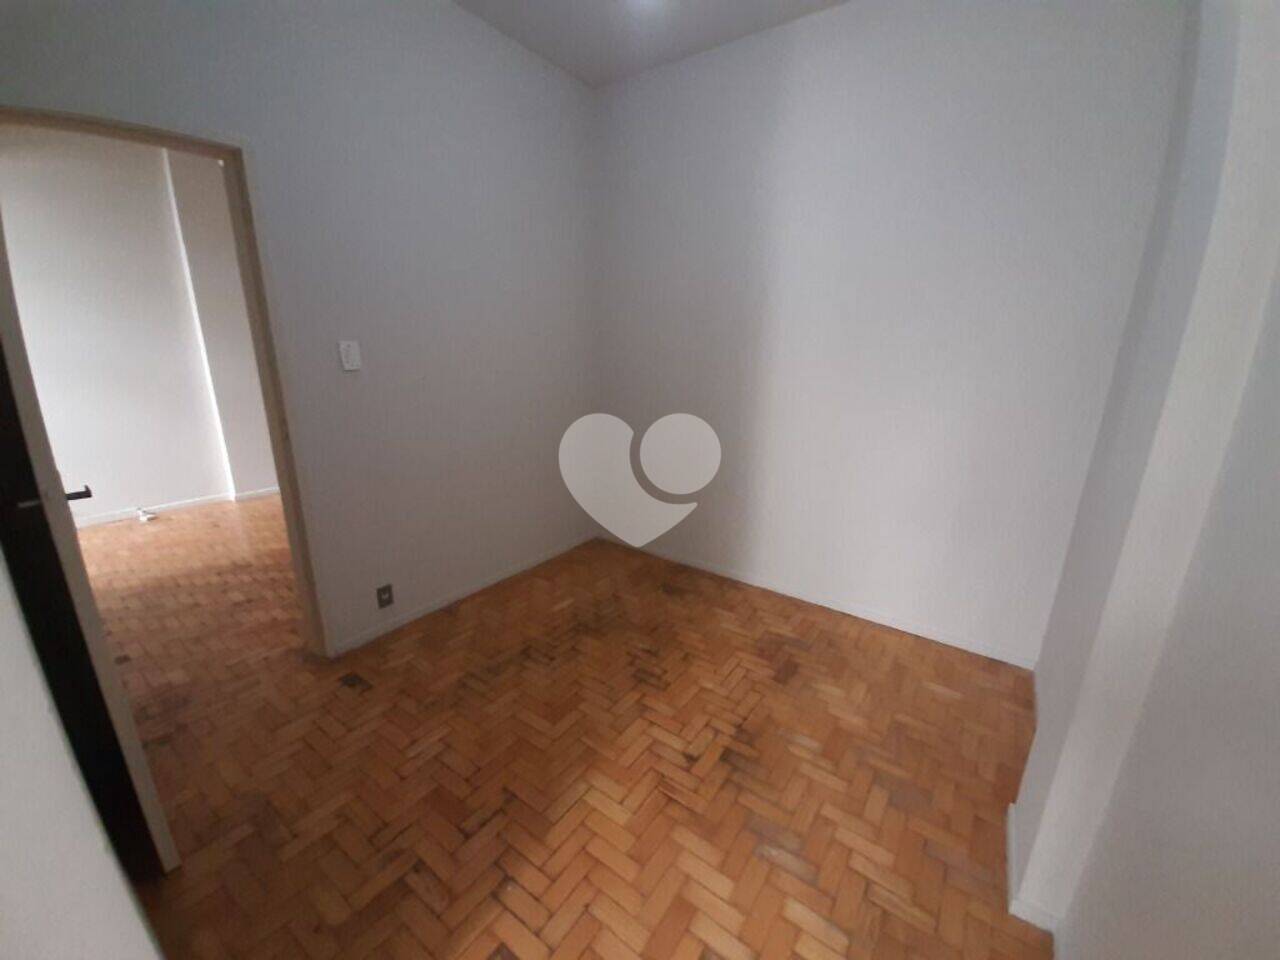 Apartamento com 1 dormitório à venda, 35 m² por R$ 240.000 - Grajaú - Rio de Janeiro/RJ